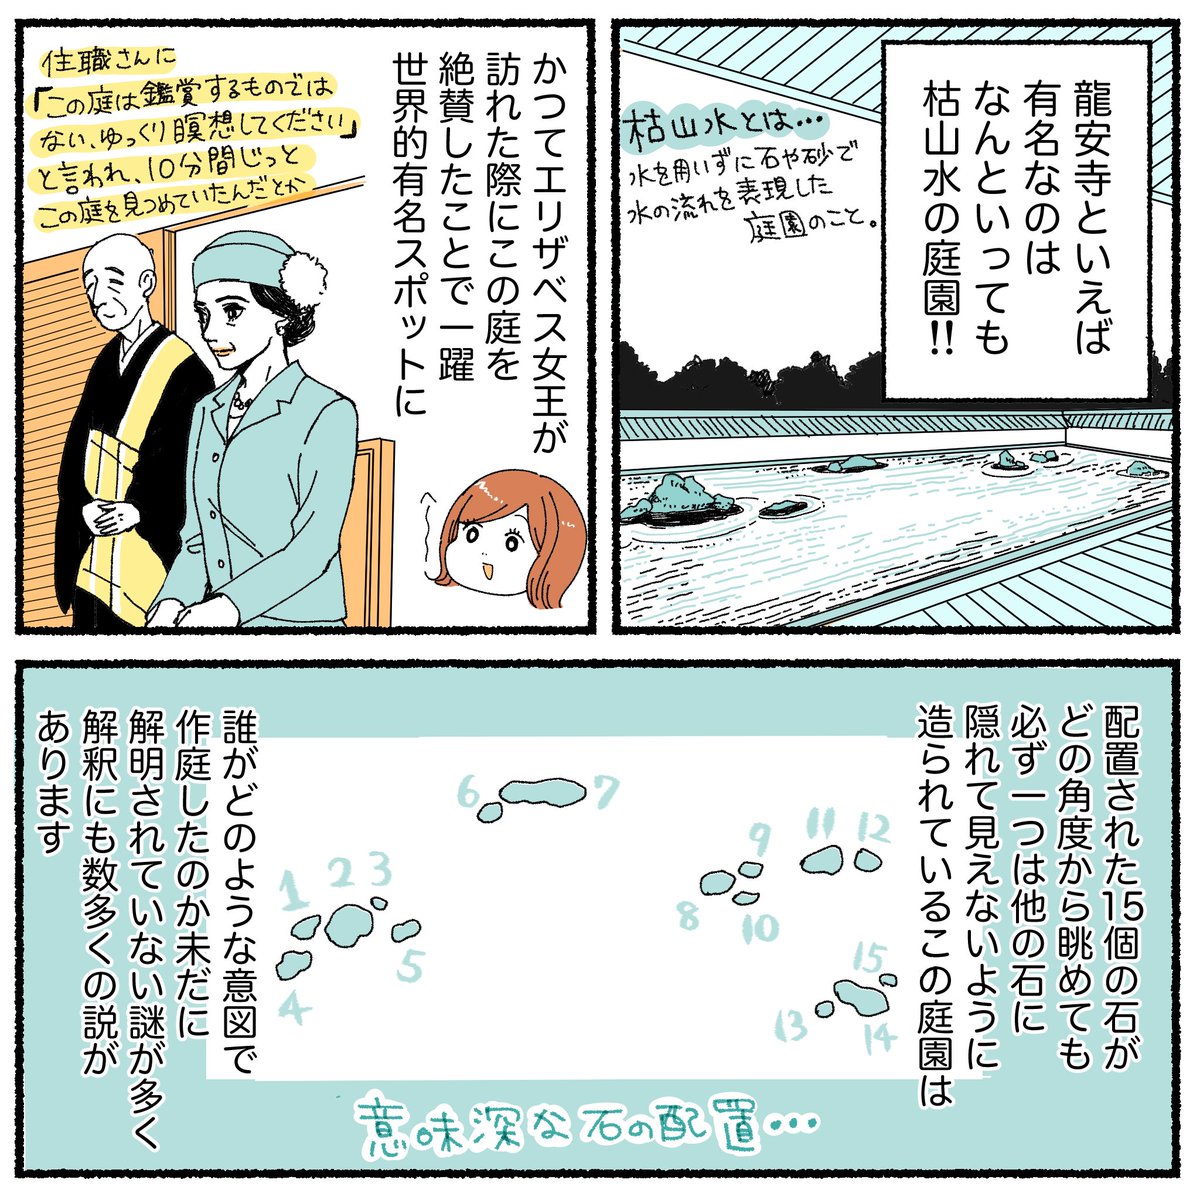 京都旅行レポ漫画、第4話の先読みを更新しました!
今回は大好きな龍安寺と、北野天満宮です。

漫画の続きはこちら↓
https://t.co/CCSmzKCFik 